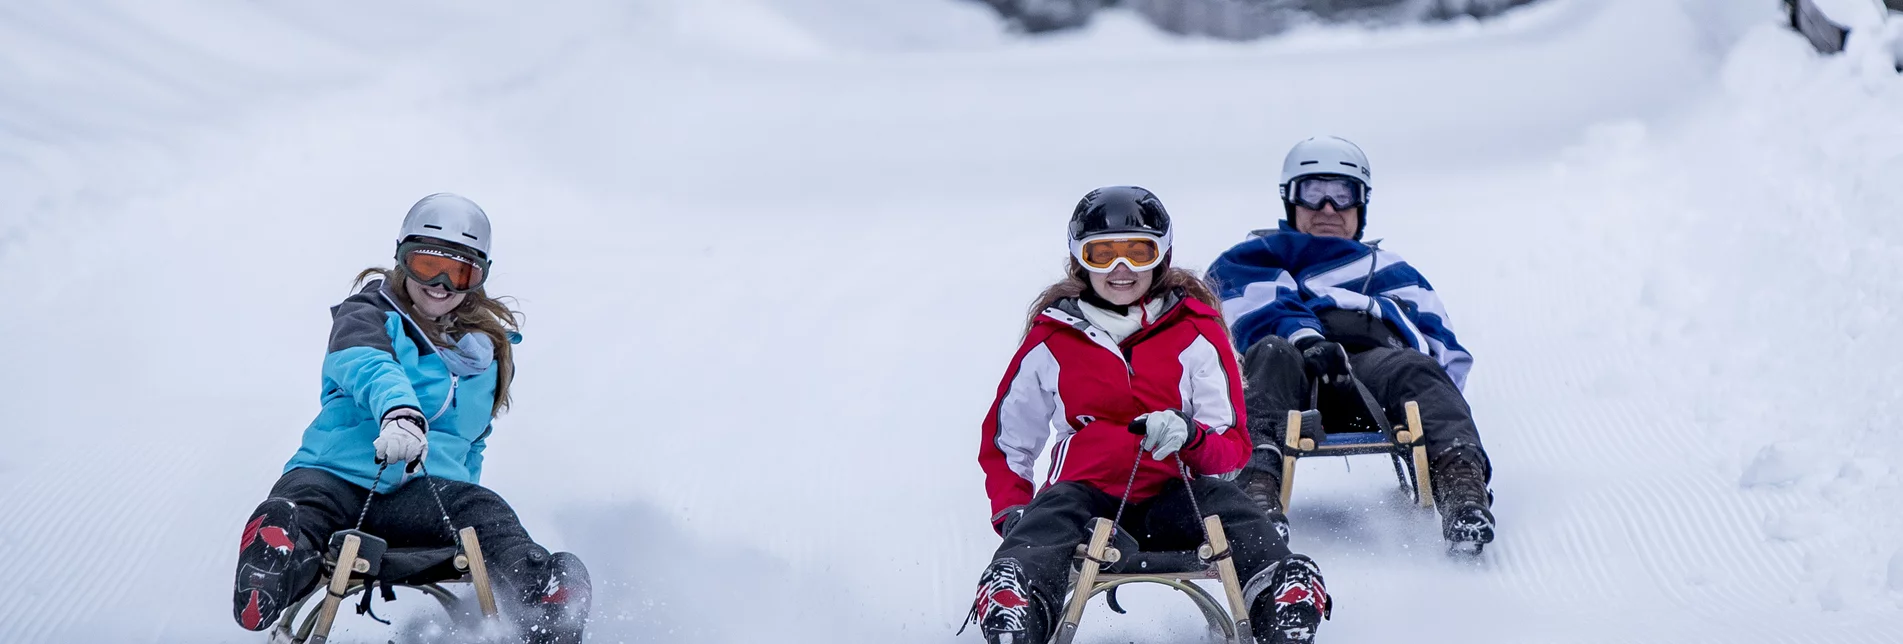 Drei Personen beim Rodeln auf einer Schneepiste | © Salzstiegl Tourismus GmbH